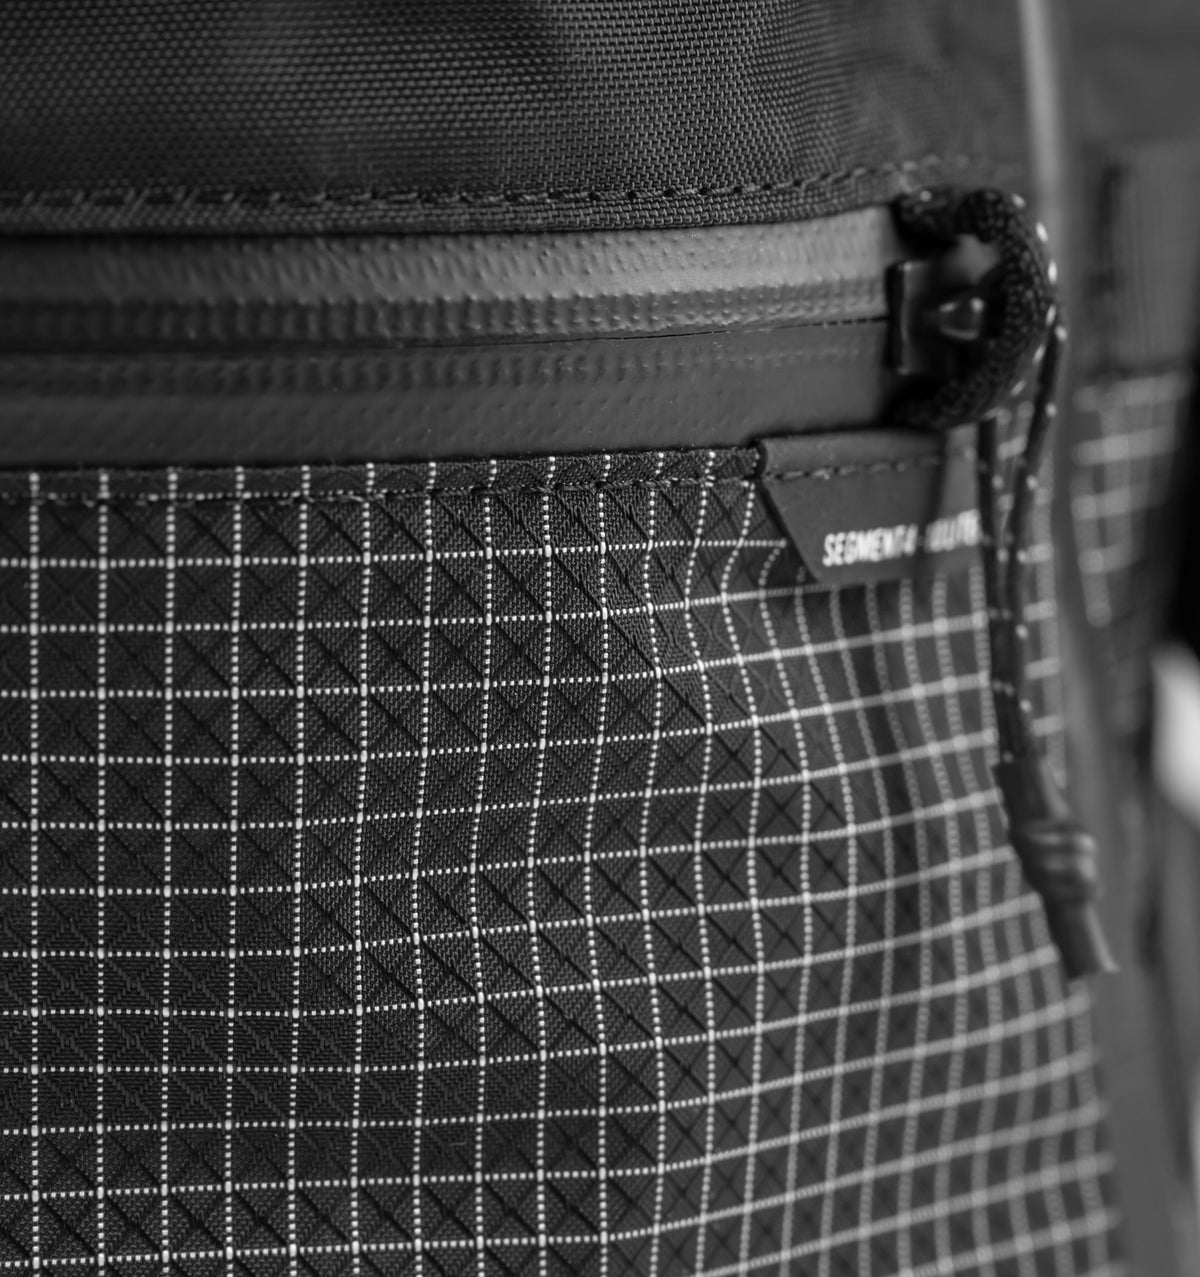 Matador SEG28 Backpack - Black